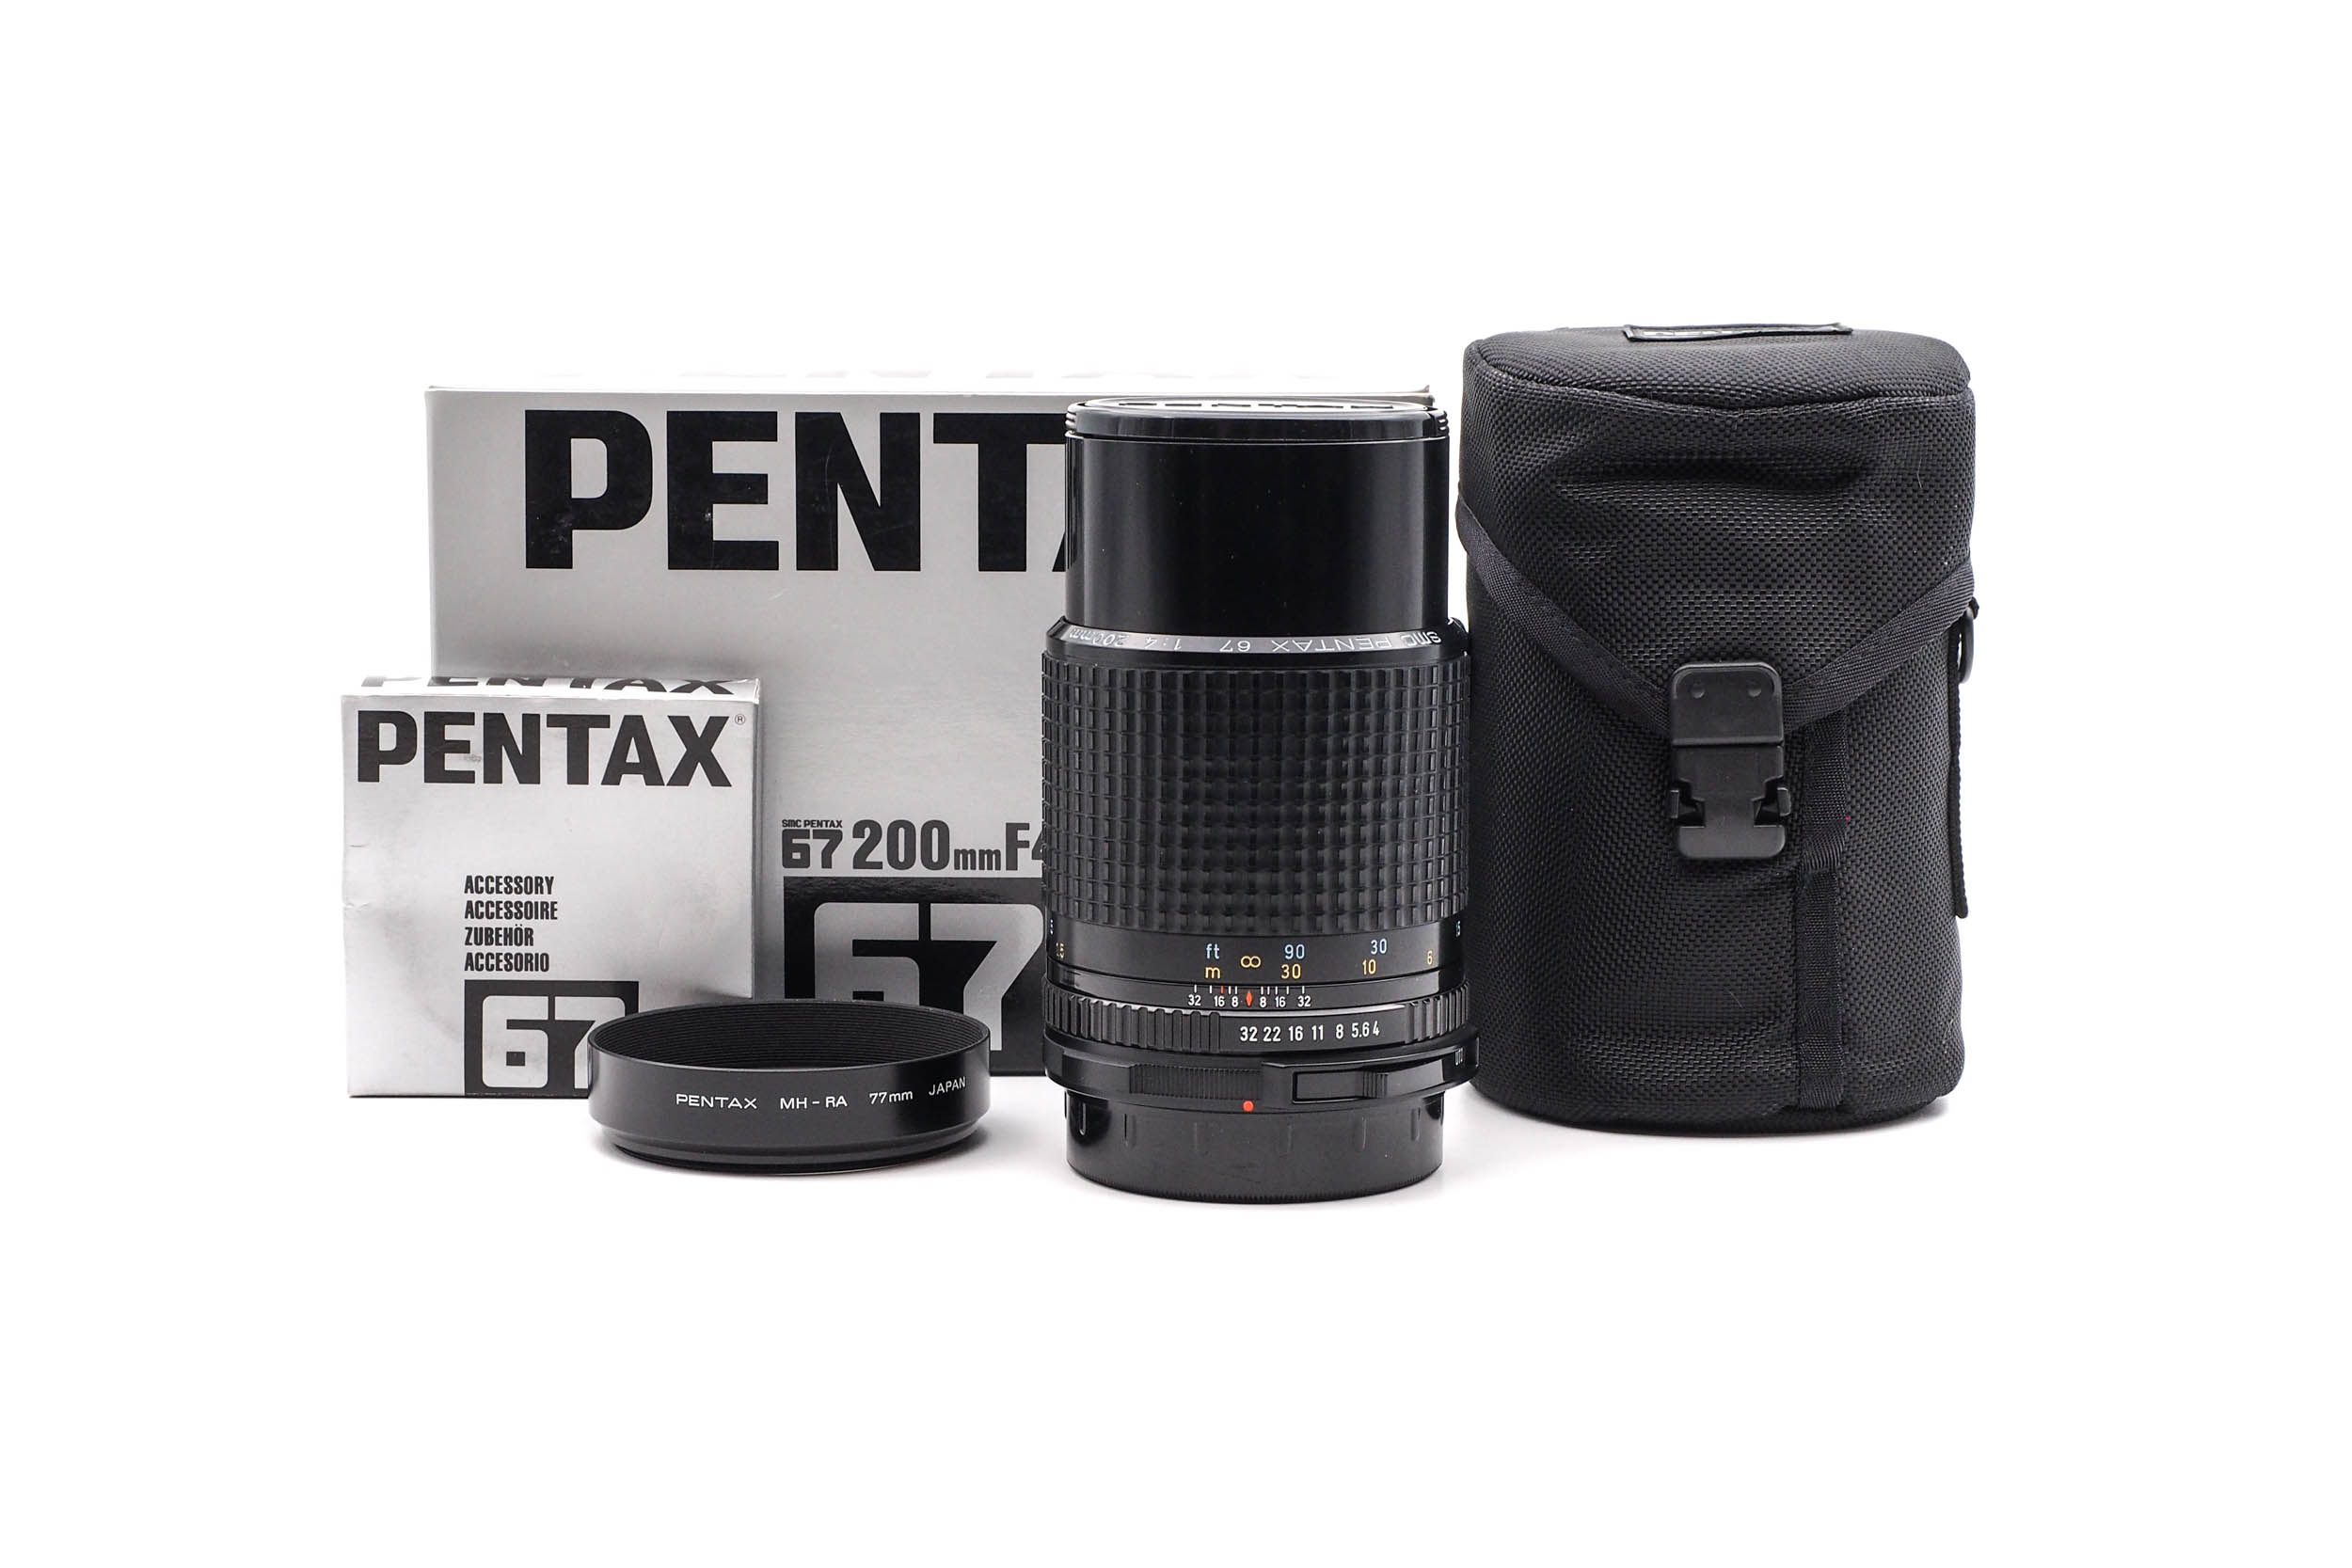 Pentax 67 200mm f/4 SMC